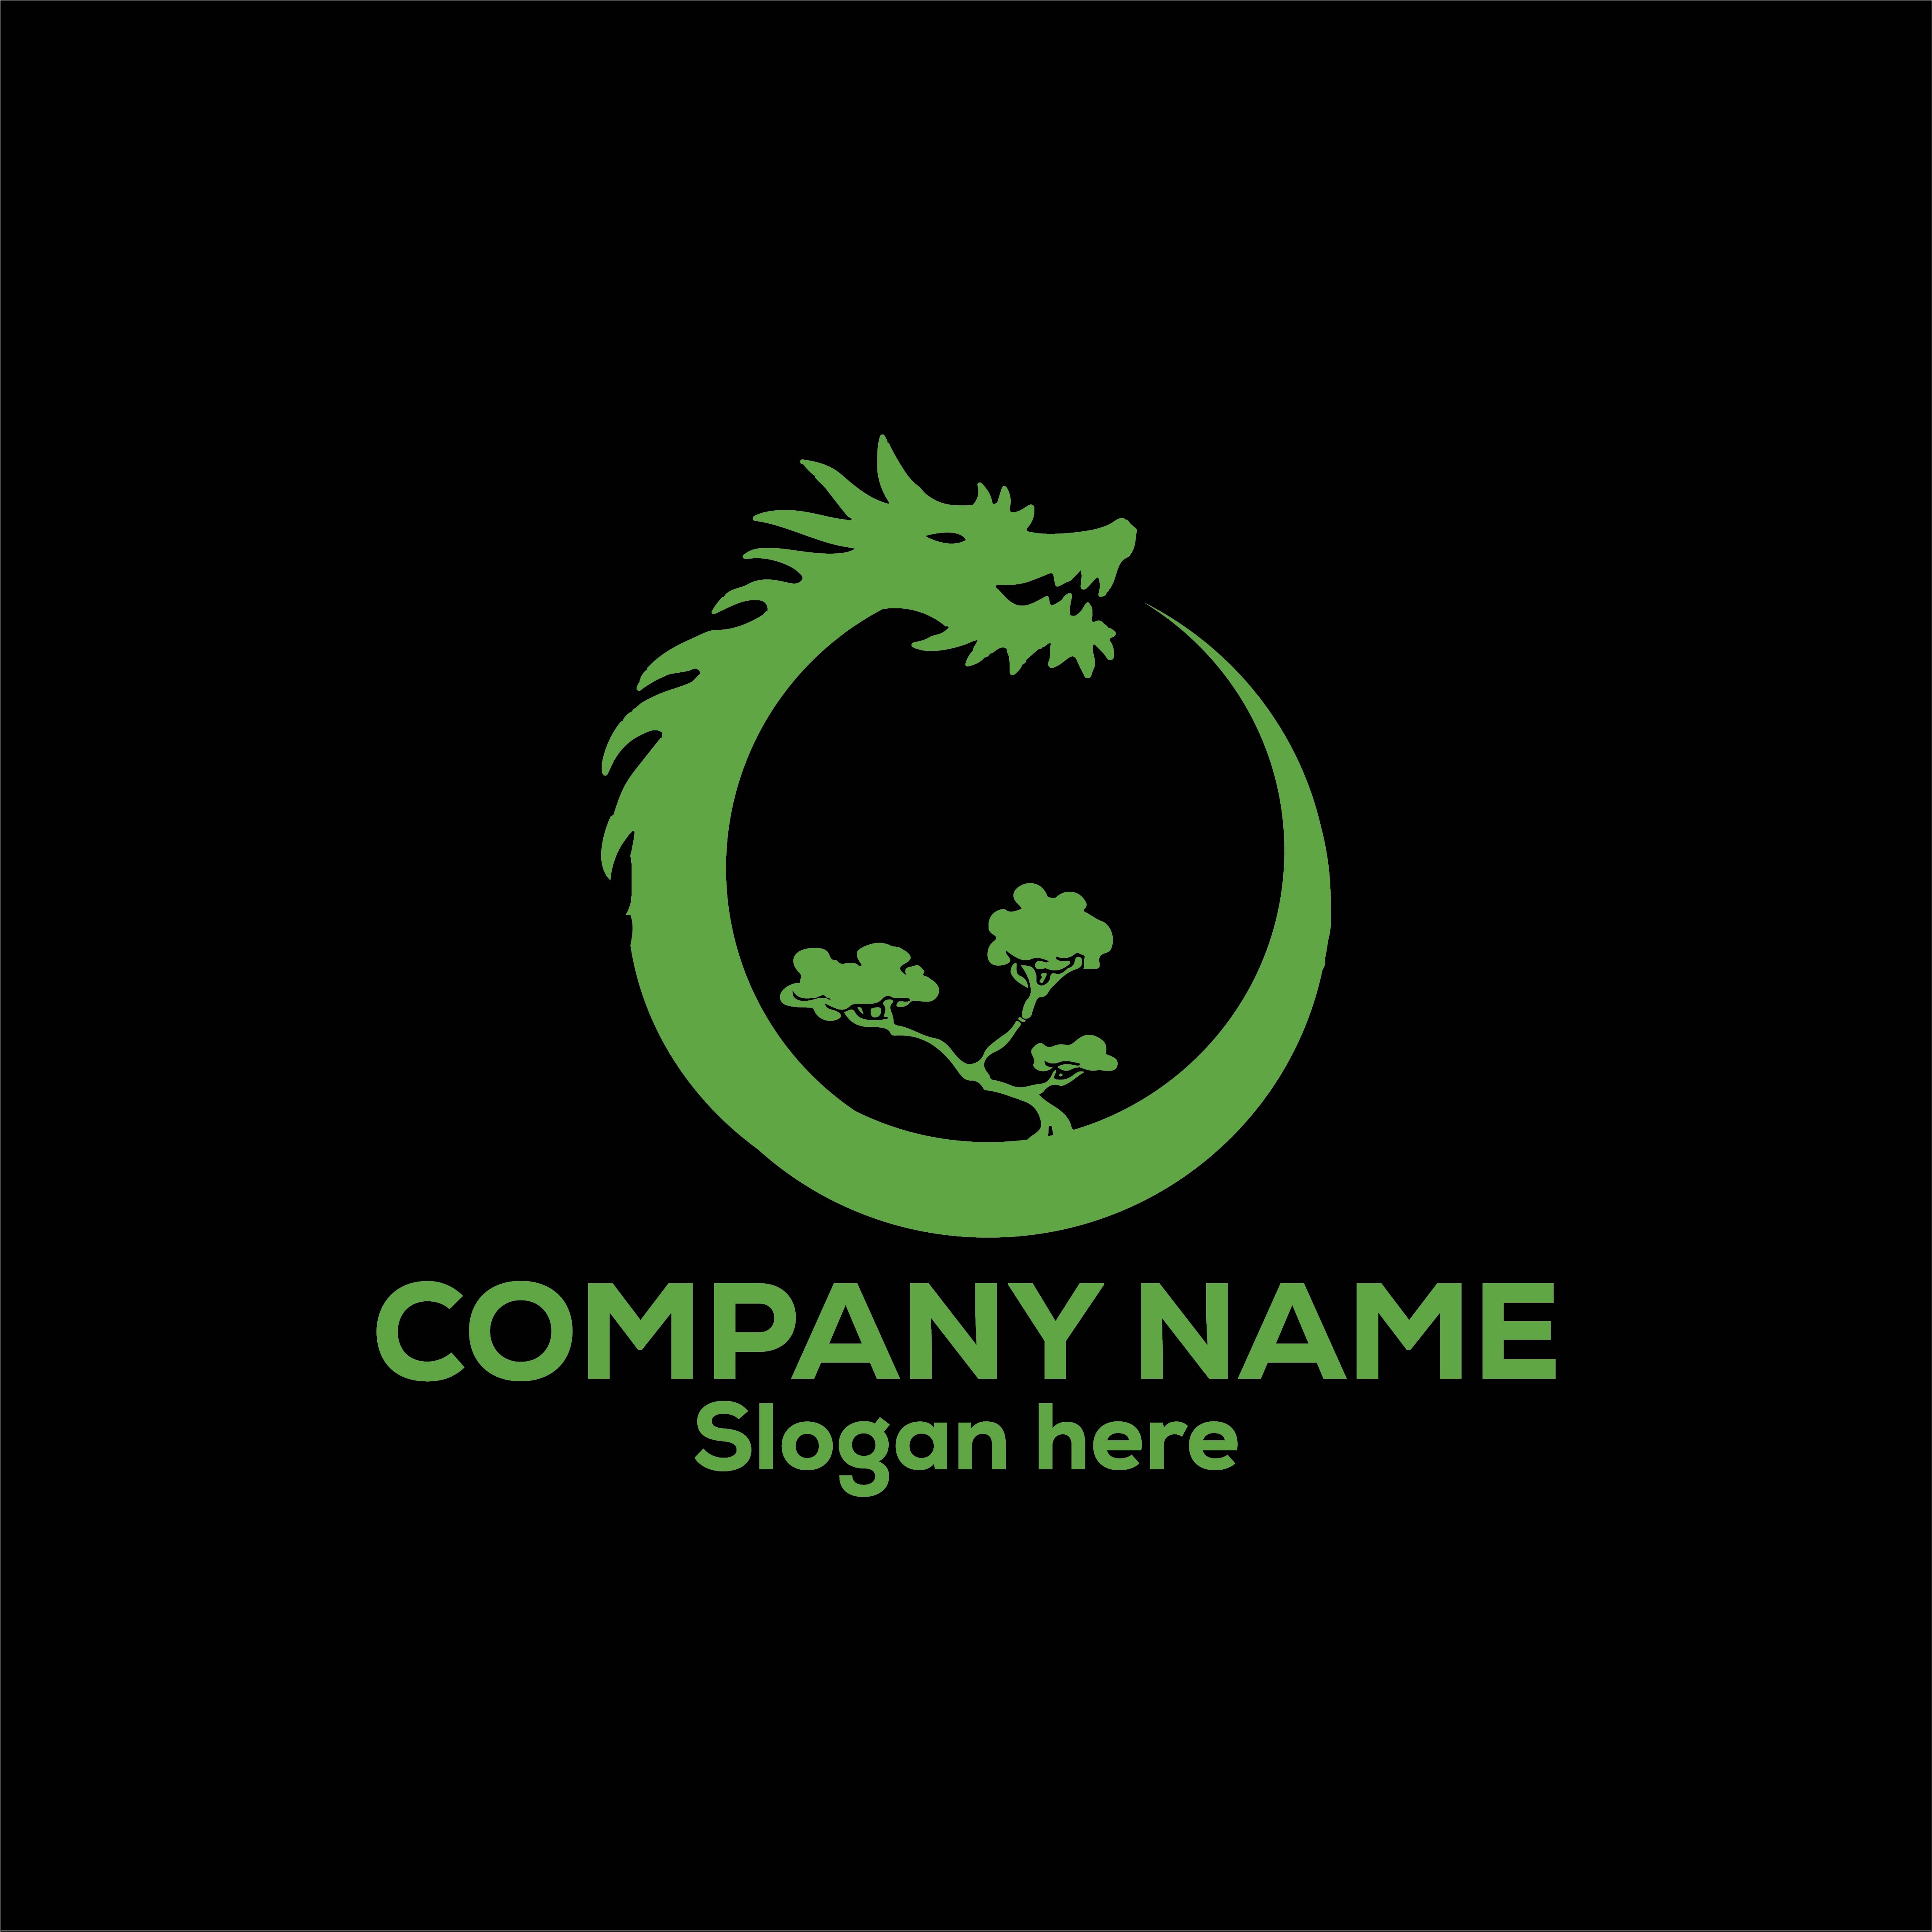 Bonsai Dragon Logo or Icon Design Vector Image Template preview image.